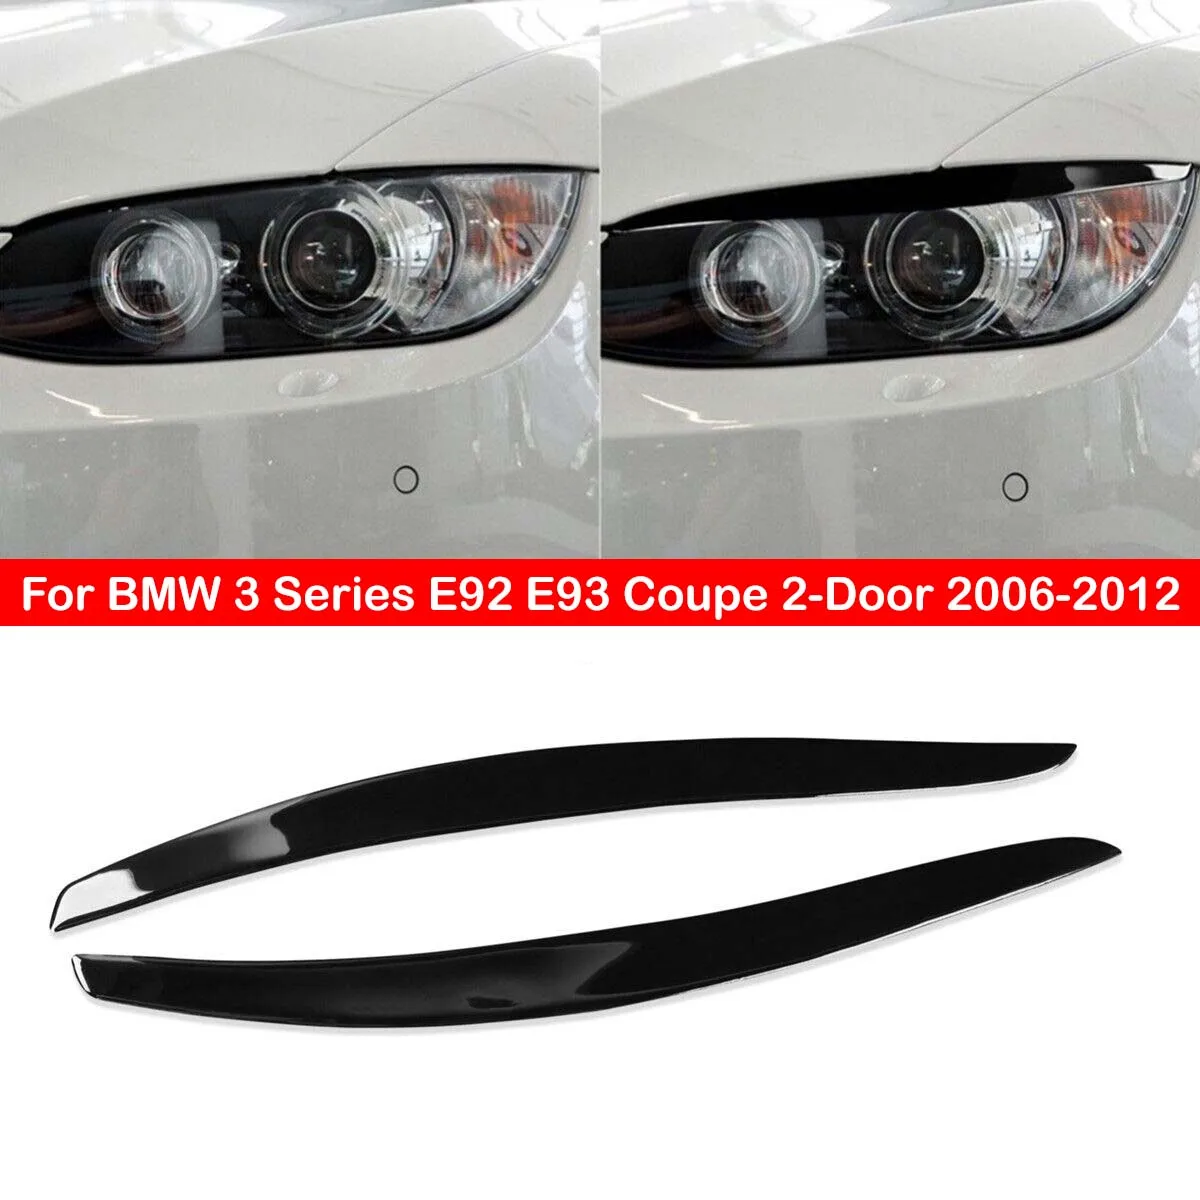 Для BMW 3 Серии E92 E93 Coupe 2-Дверный 2006-2012 Черная Автомобильная Передняя Фара Для Бровей, Накладка на Веко, Наклейка, Декоративная Рамка0